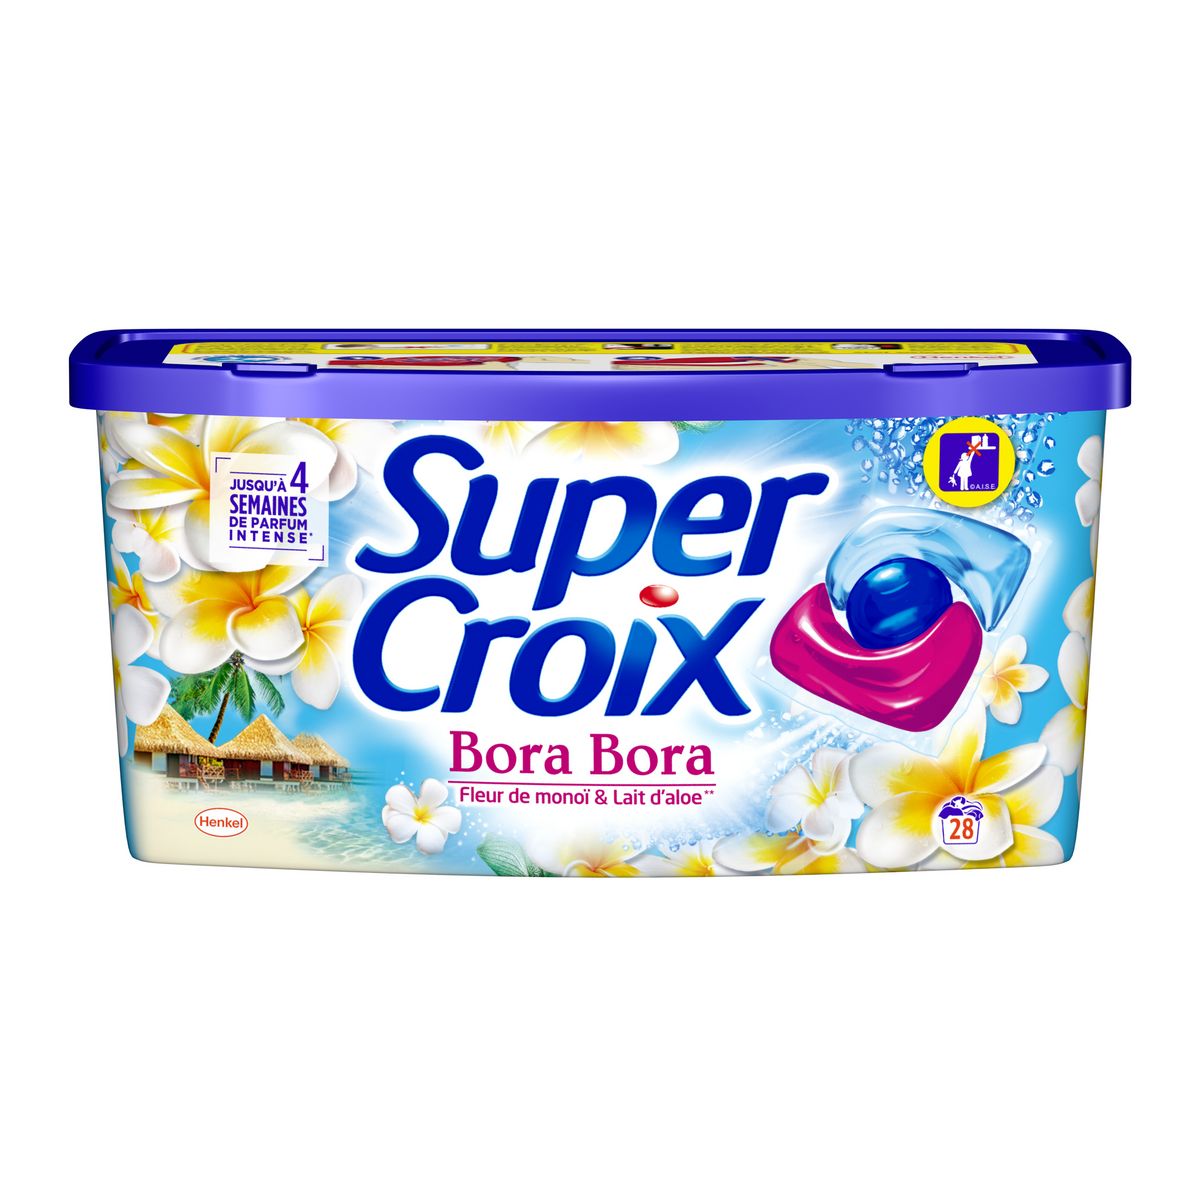 SUPER CROIX Lessive capsules Bora Bora fleurs de monoï et lait d